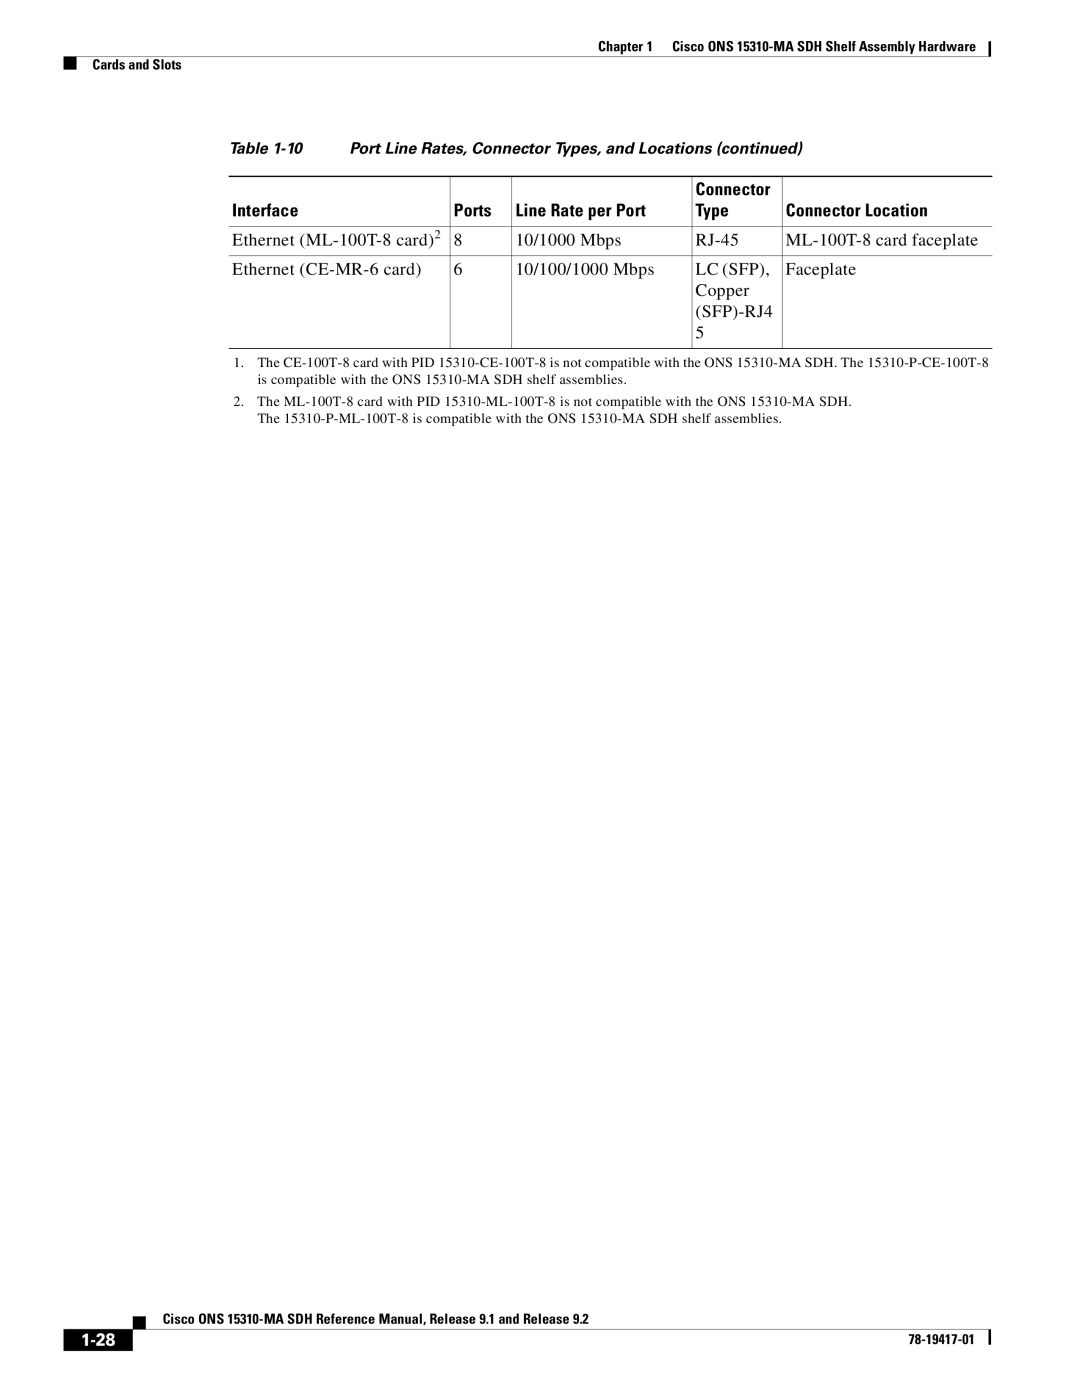 Cisco Systems 15310-MA manual Lc Sfp, Copper SFP-RJ4 